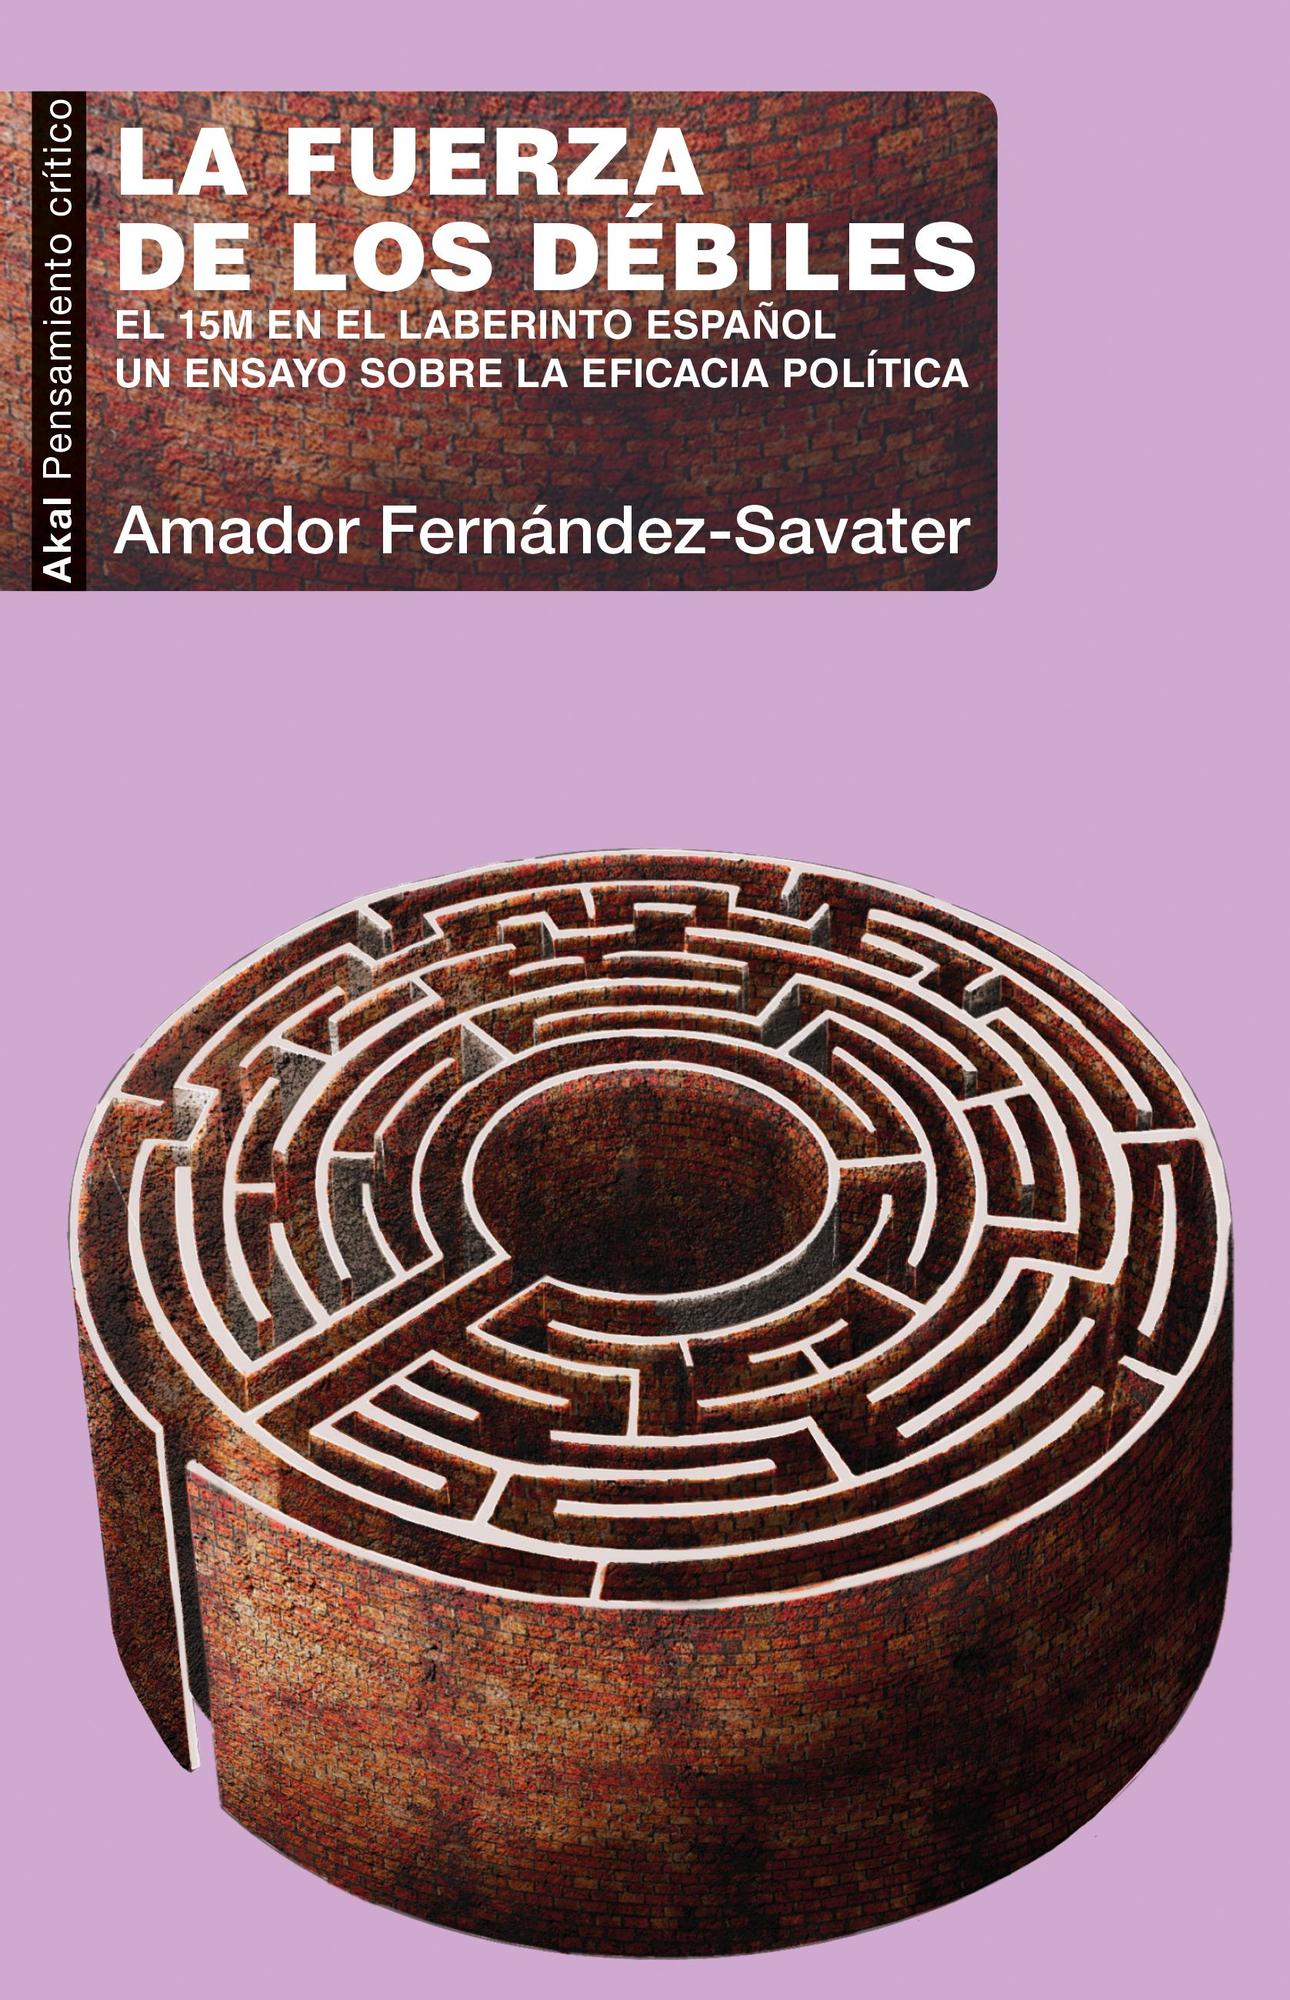 El último ensayo de Amador Fernández-Savater.